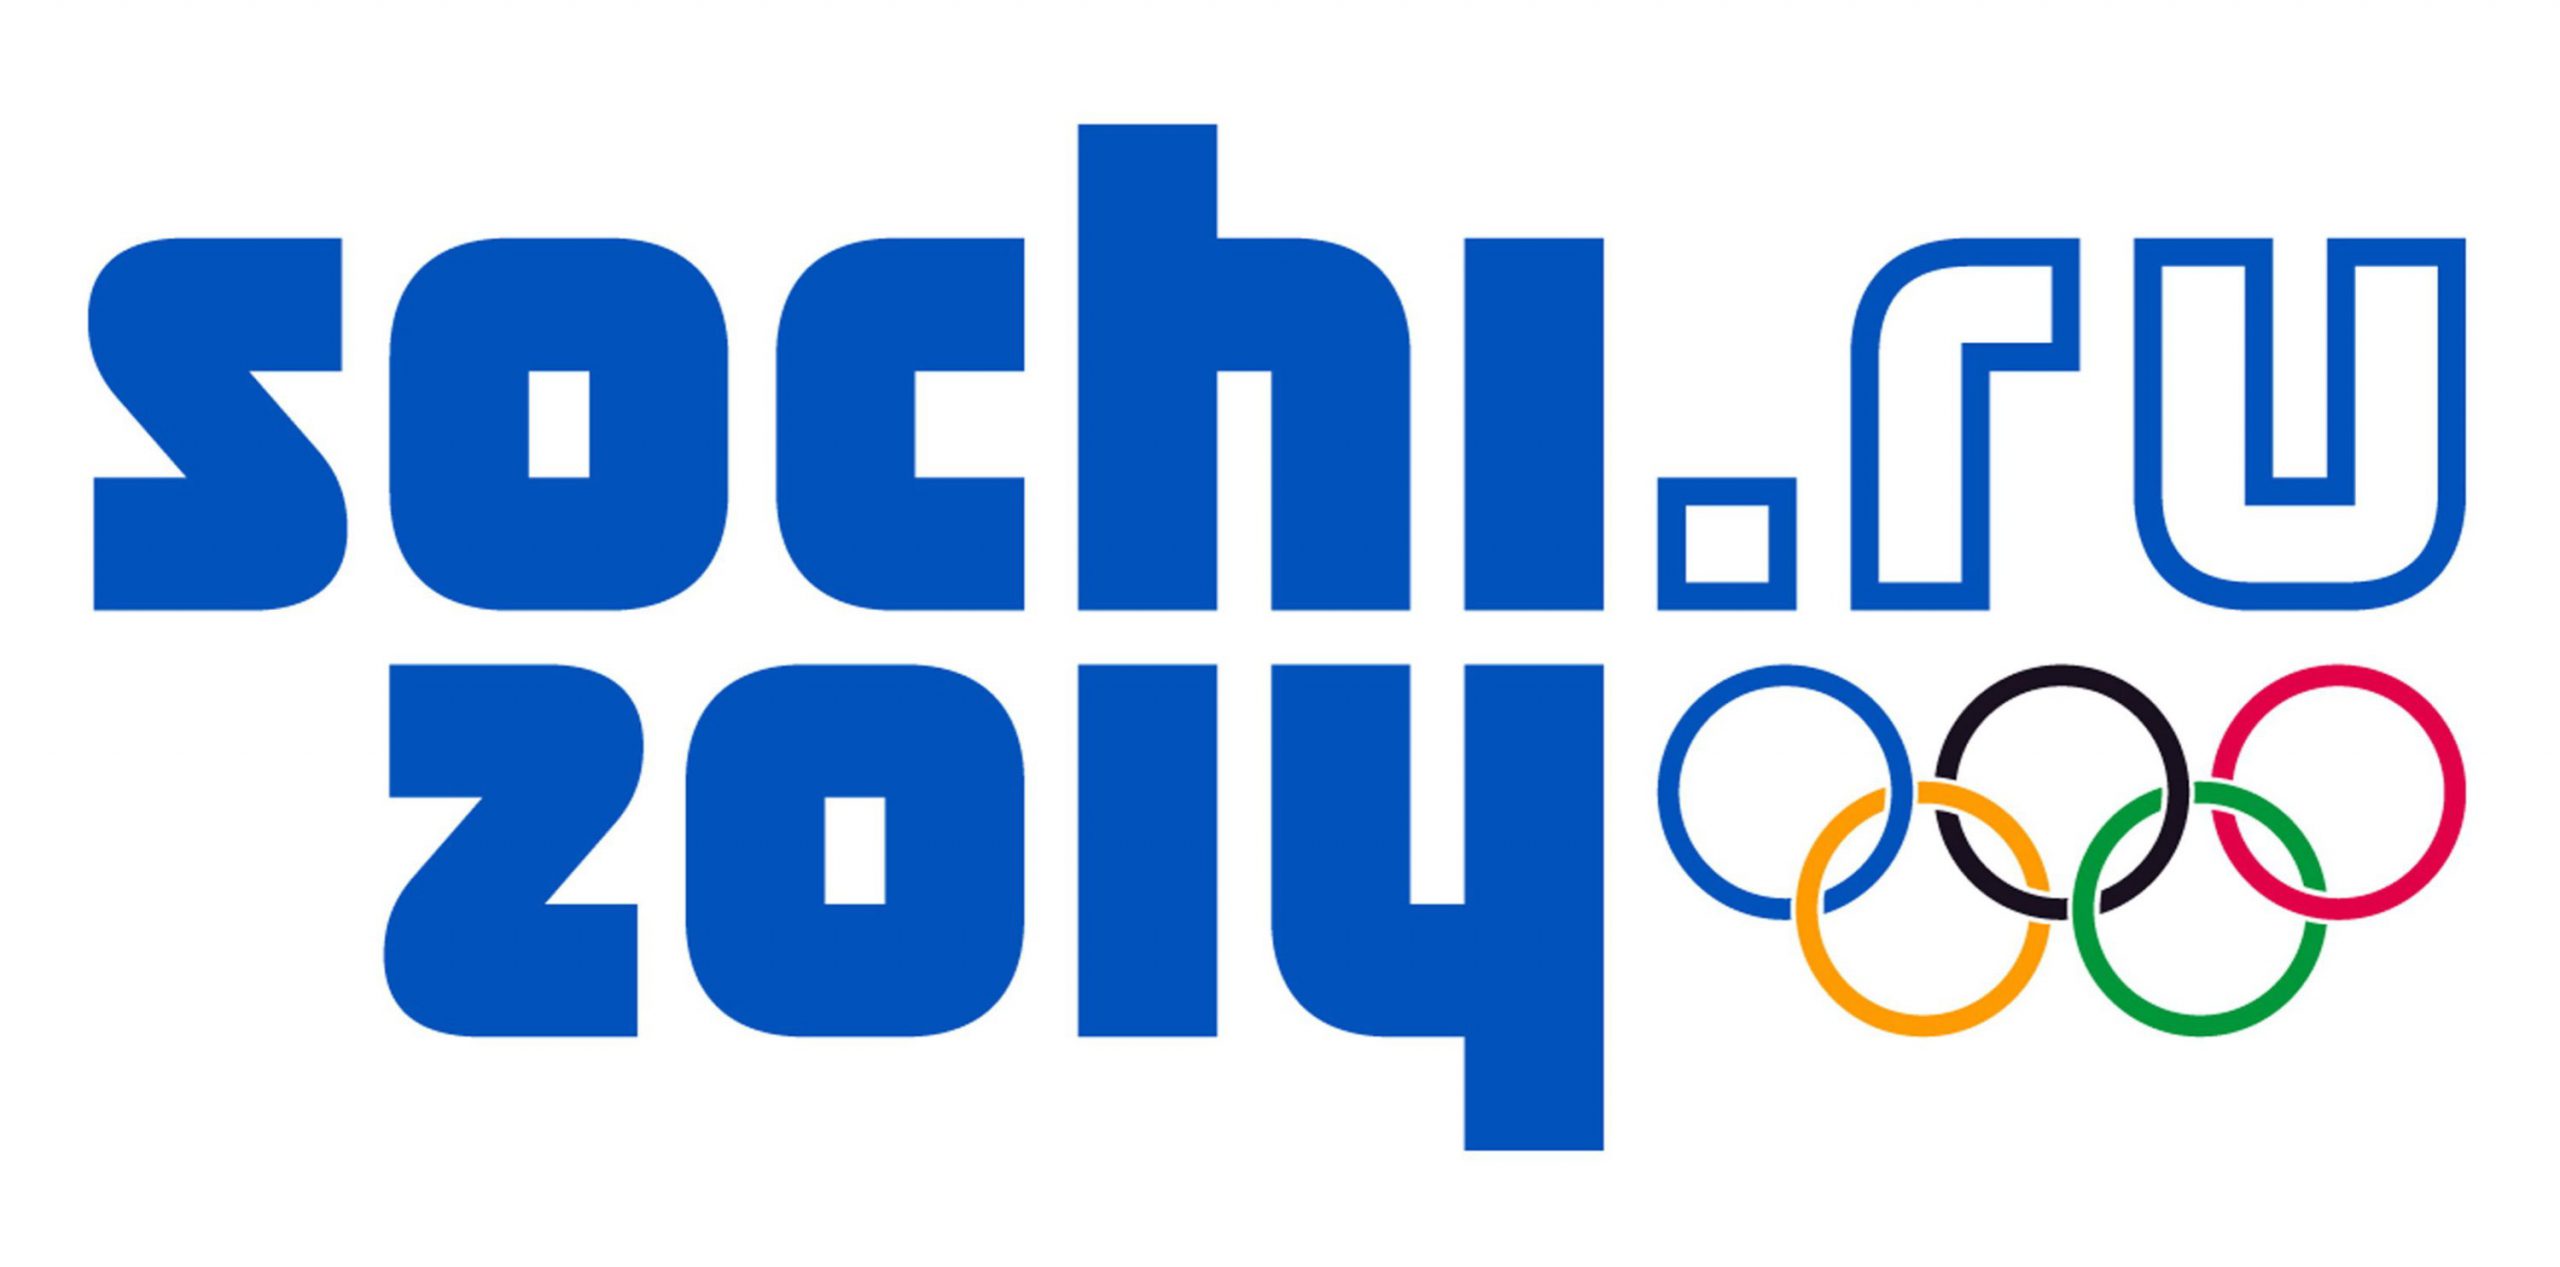 Procter & Gamble globalny partner Zimowych Igrzysk Olimpijskich Soczi 2014